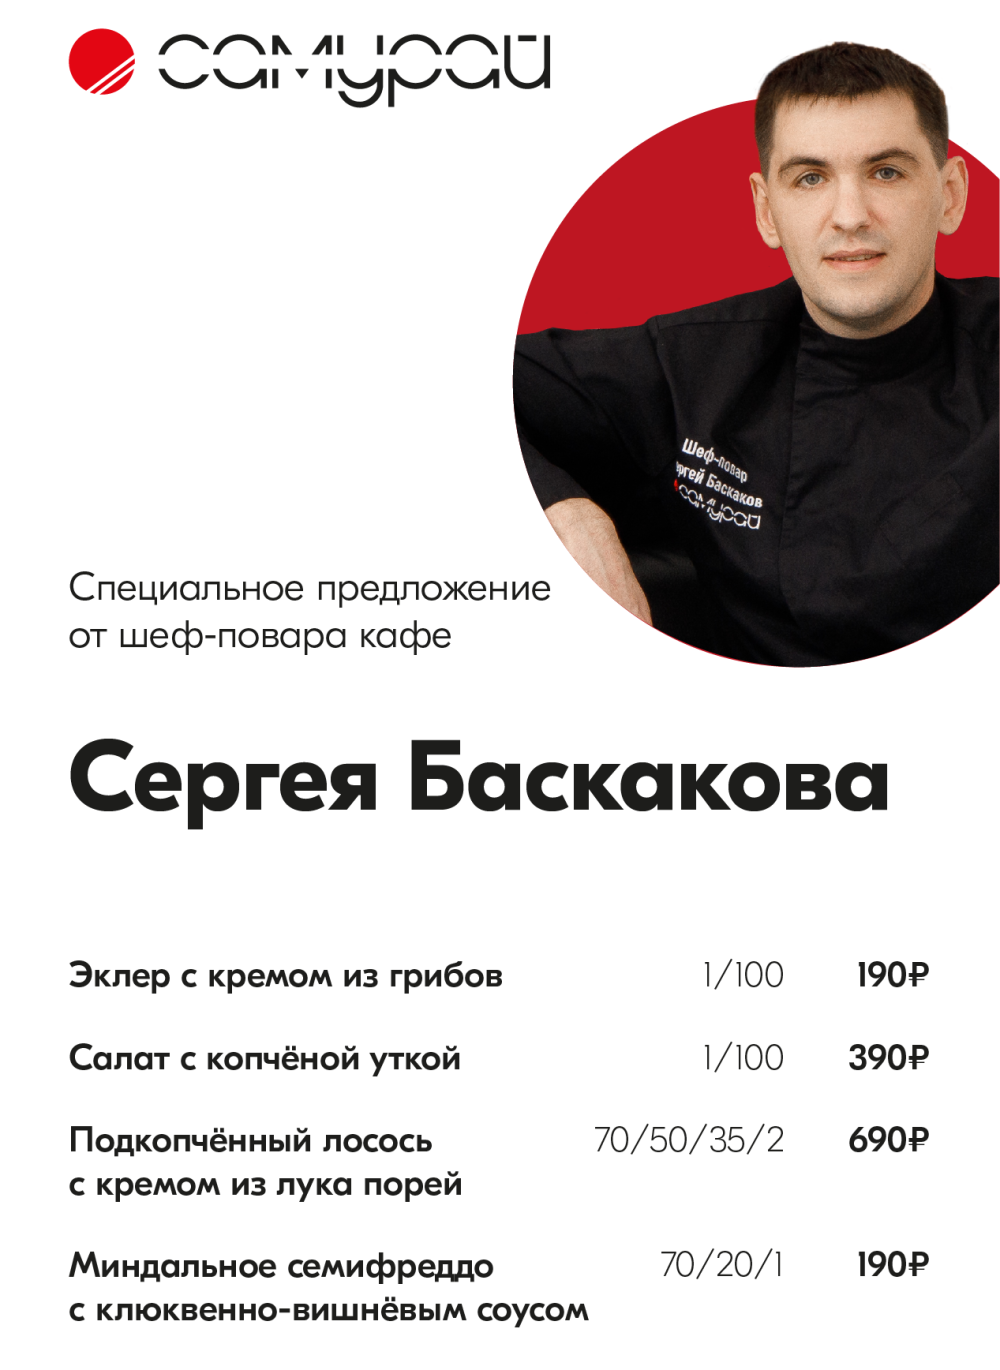 Спец предложение шеф-повара Сергея Баскакова на Б.Покровской 59